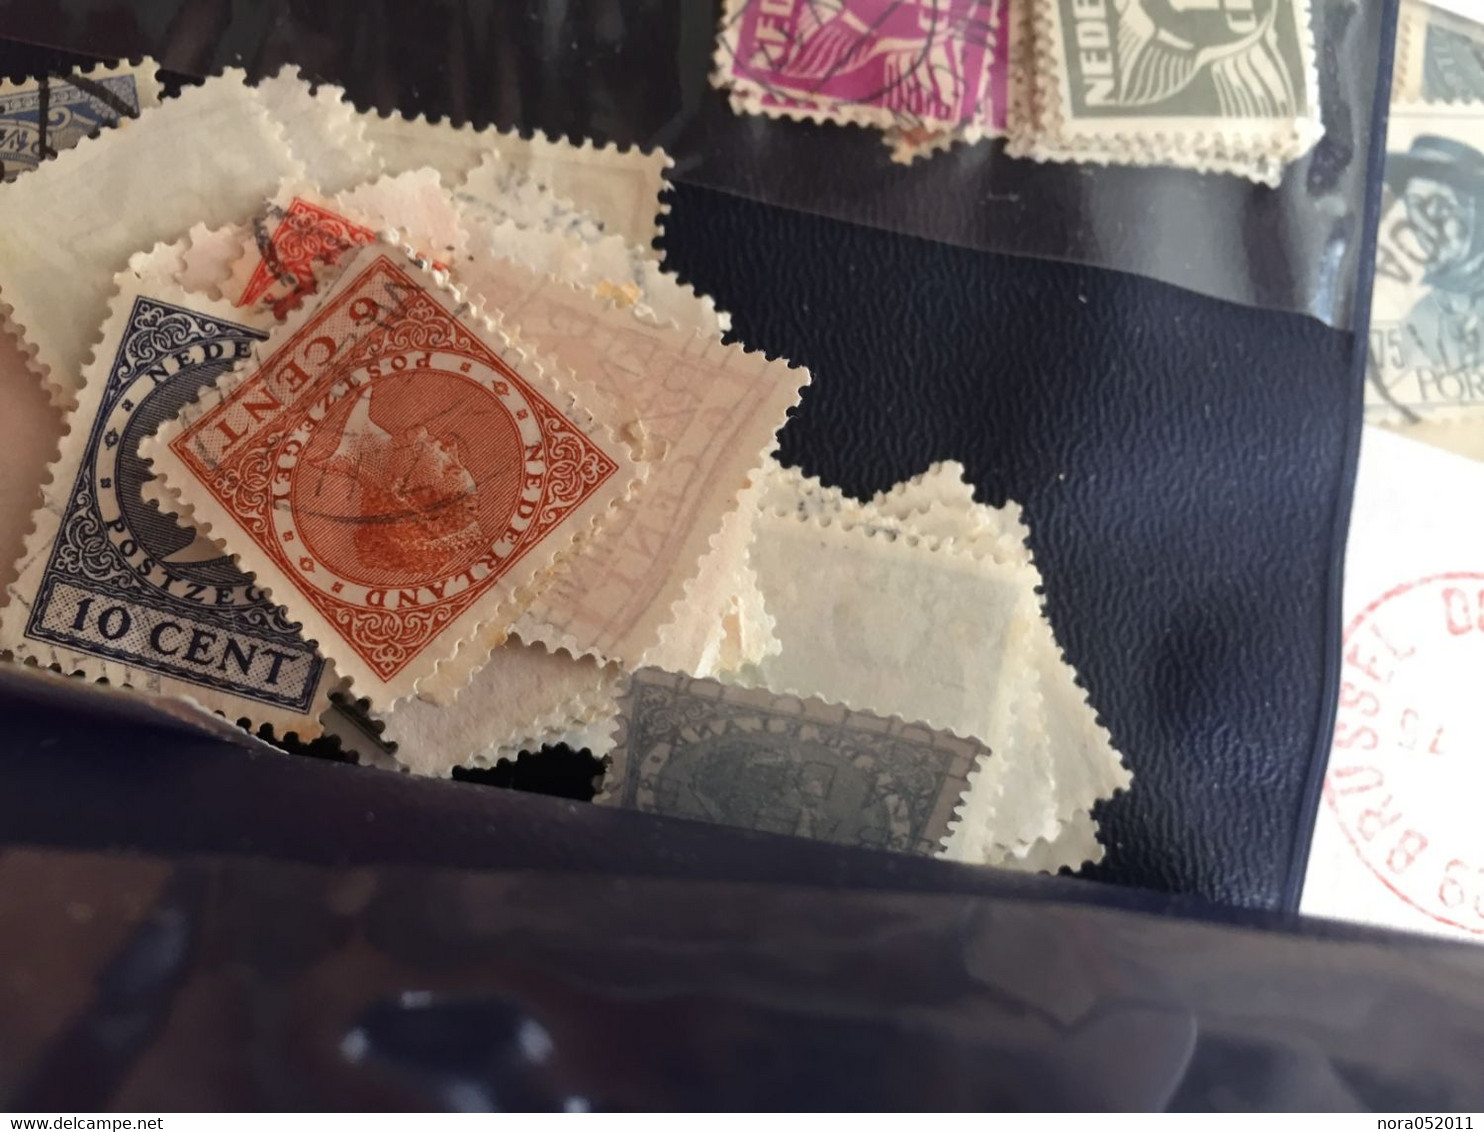 Super lot de milliers de timbres et document oblitéré à trier avec beaucoup de classique 1850/1960 voir photos